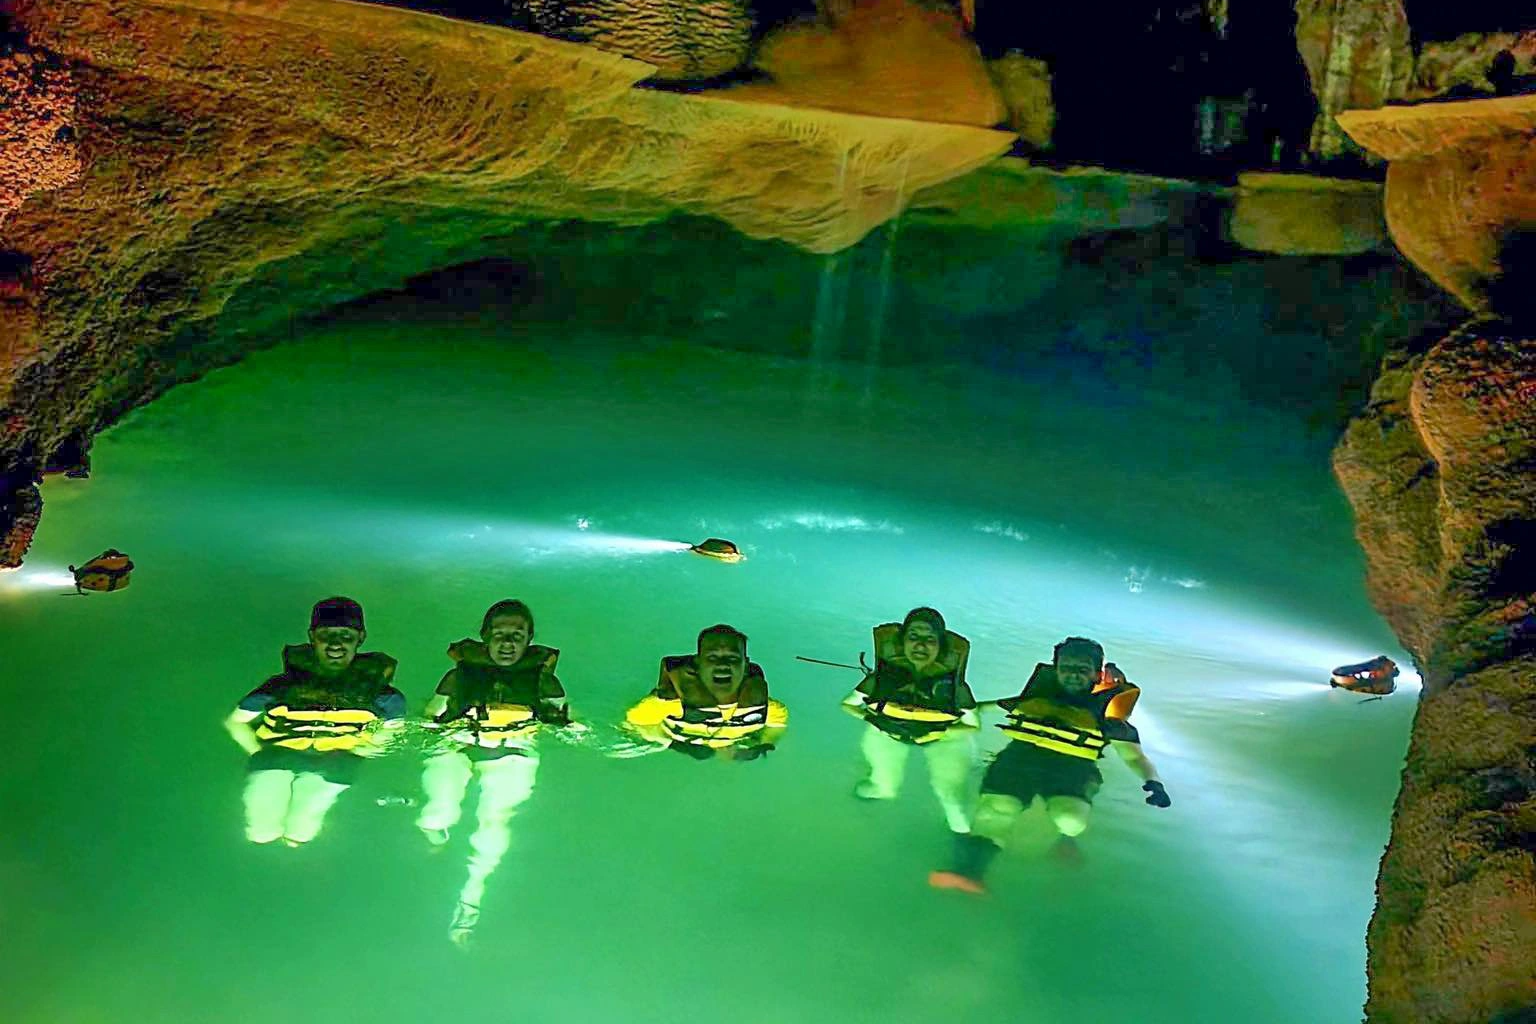 Vẻ đẹp siêu thực trong hang động có hồ nước bí ẩn treo lơ lửng - 6